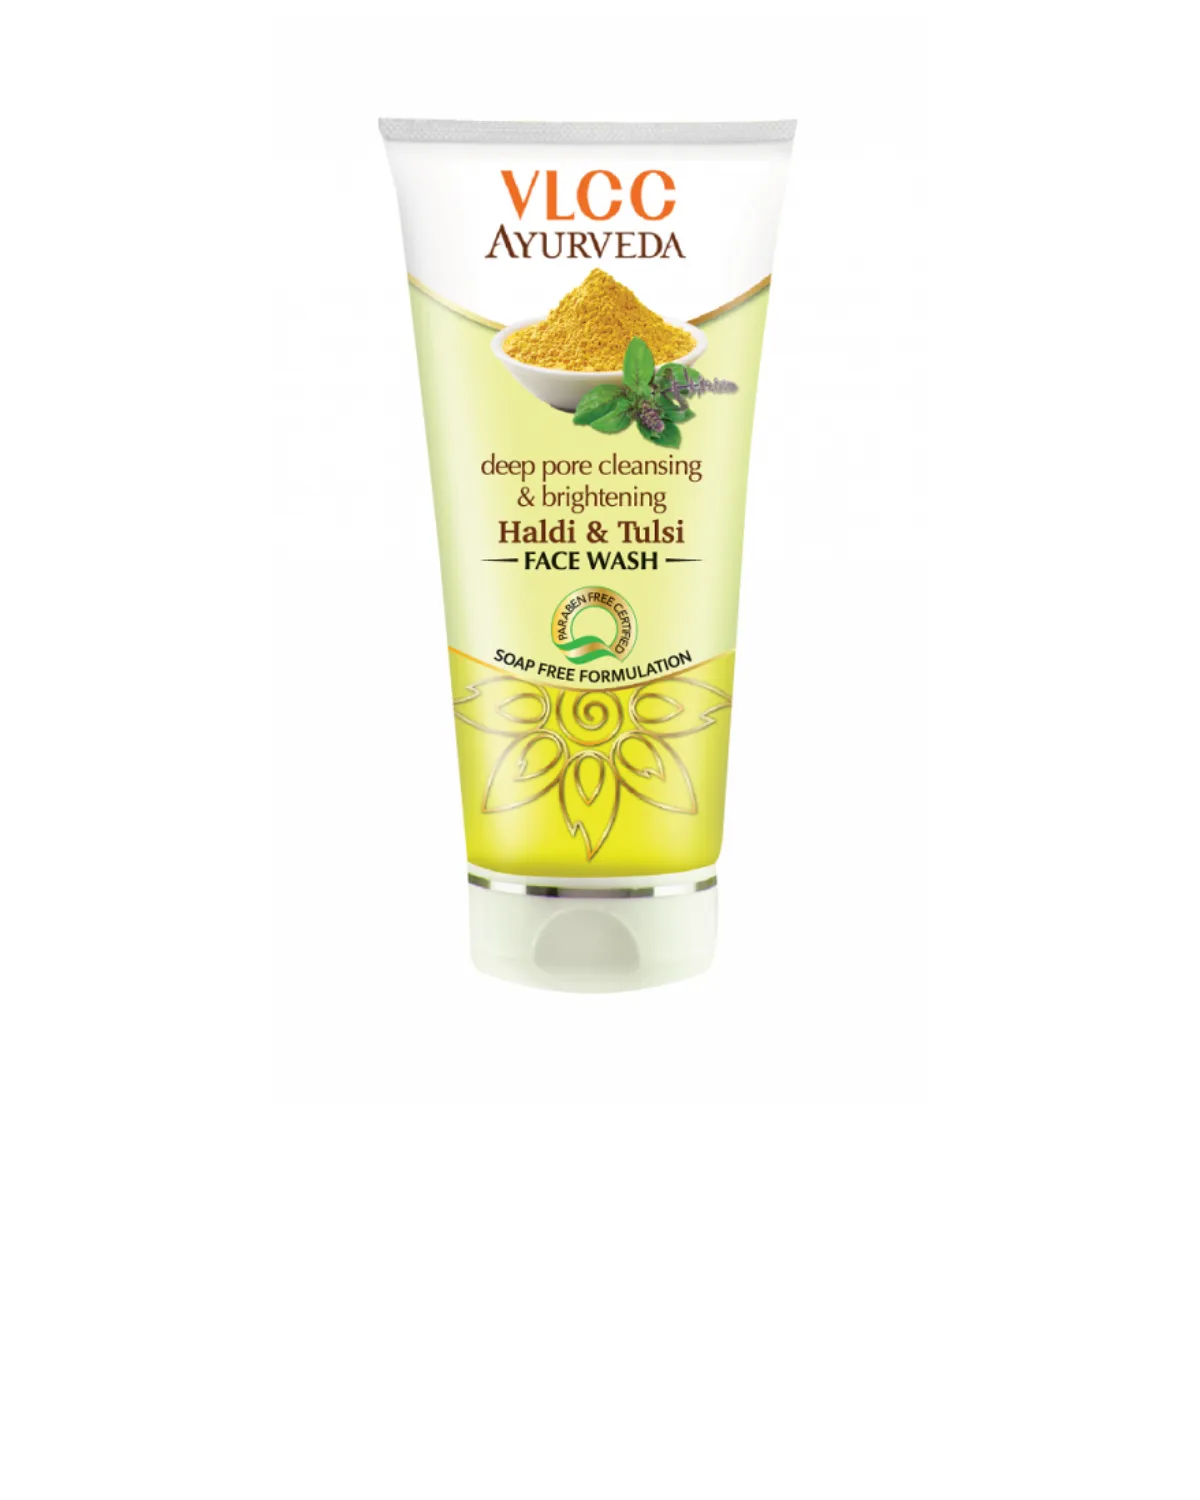 Гель для умывания – глубокое очищение пор и осветление кожи лица (50ml) vlcc f0366 vlcc (Индия)#2